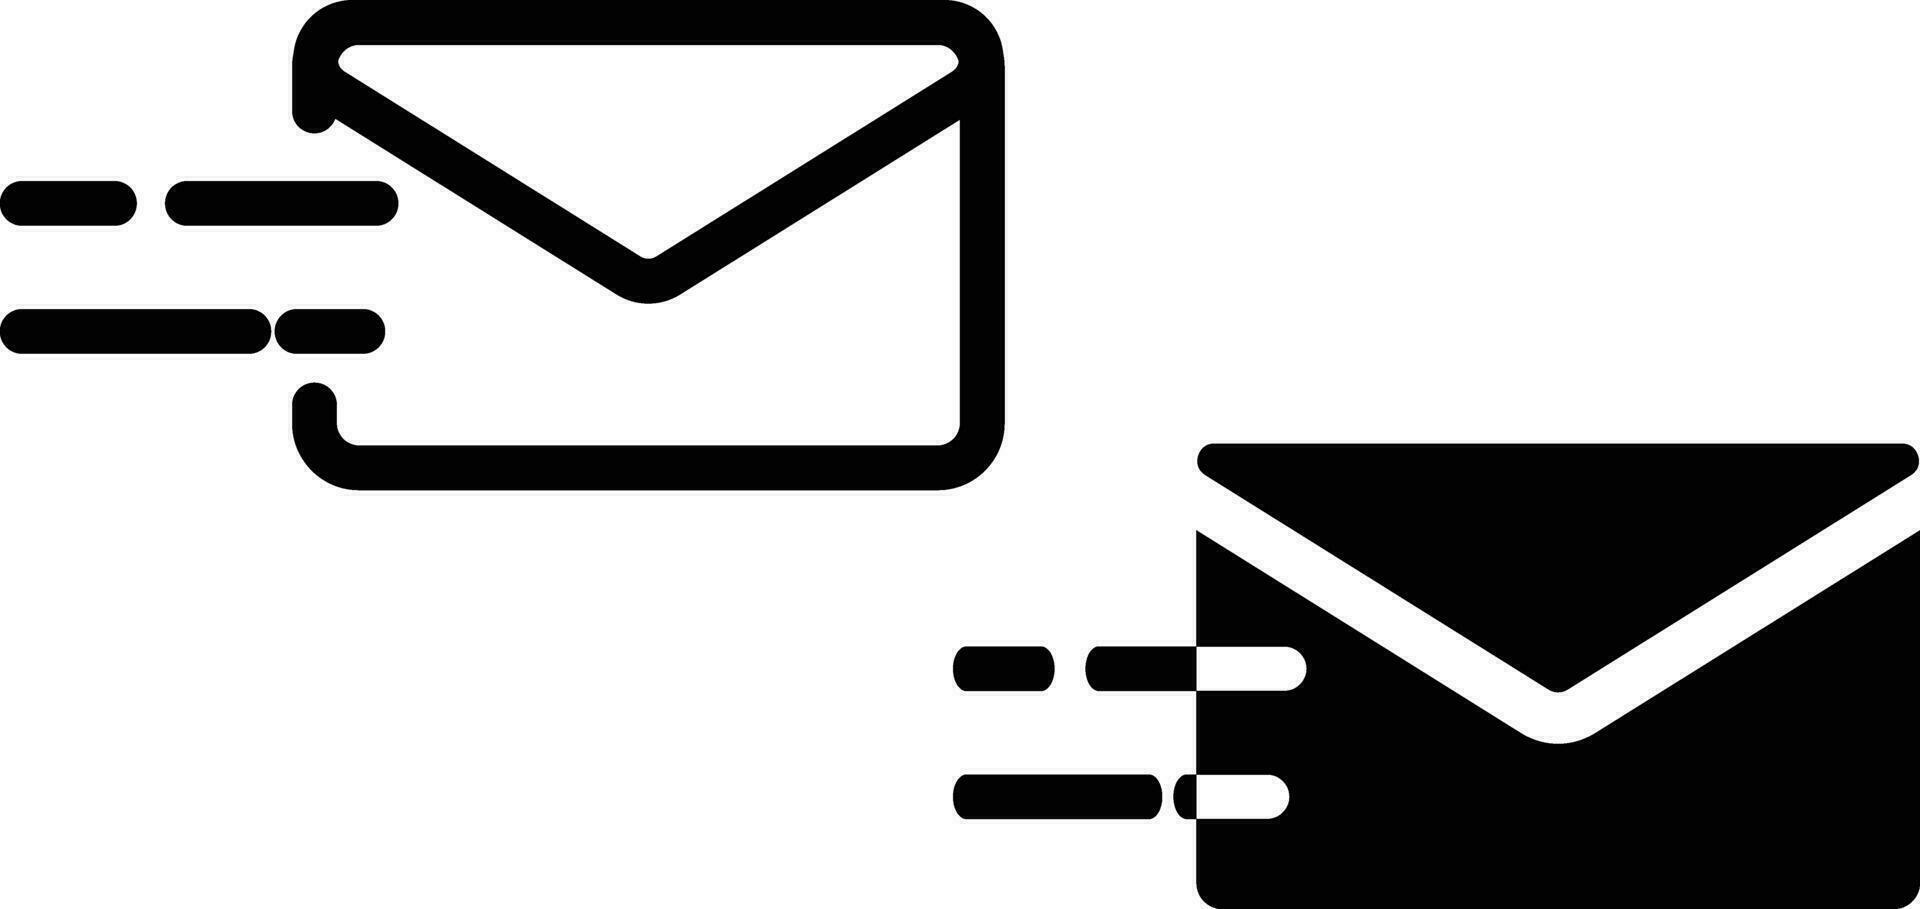 Email Symbol Blatt, einfach modisch eben Stil Linie und solide isoliert Vektor Illustration auf Weiß Hintergrund. zum Apps, Logo, Webseiten, Symbol , ui, ux, Grafik und Netz Design. eps 10.